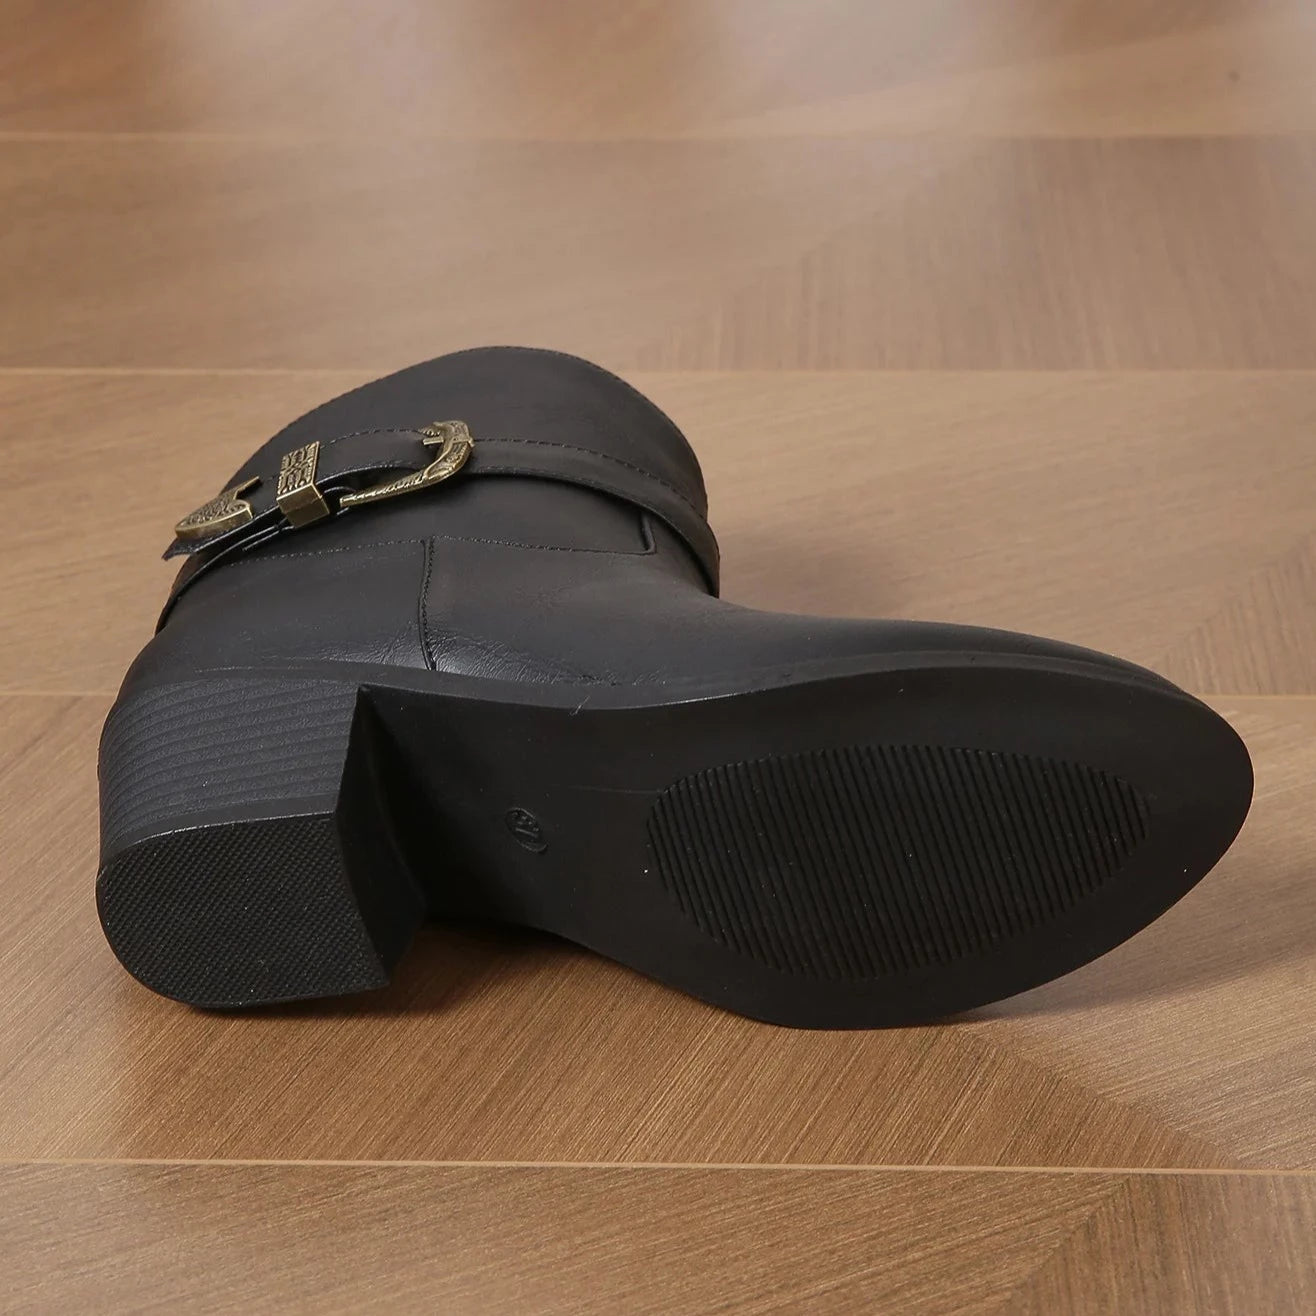 מגפוני בוקרים "רפאל לופז" בעיצוב אותנטי - נעלי אביגיל